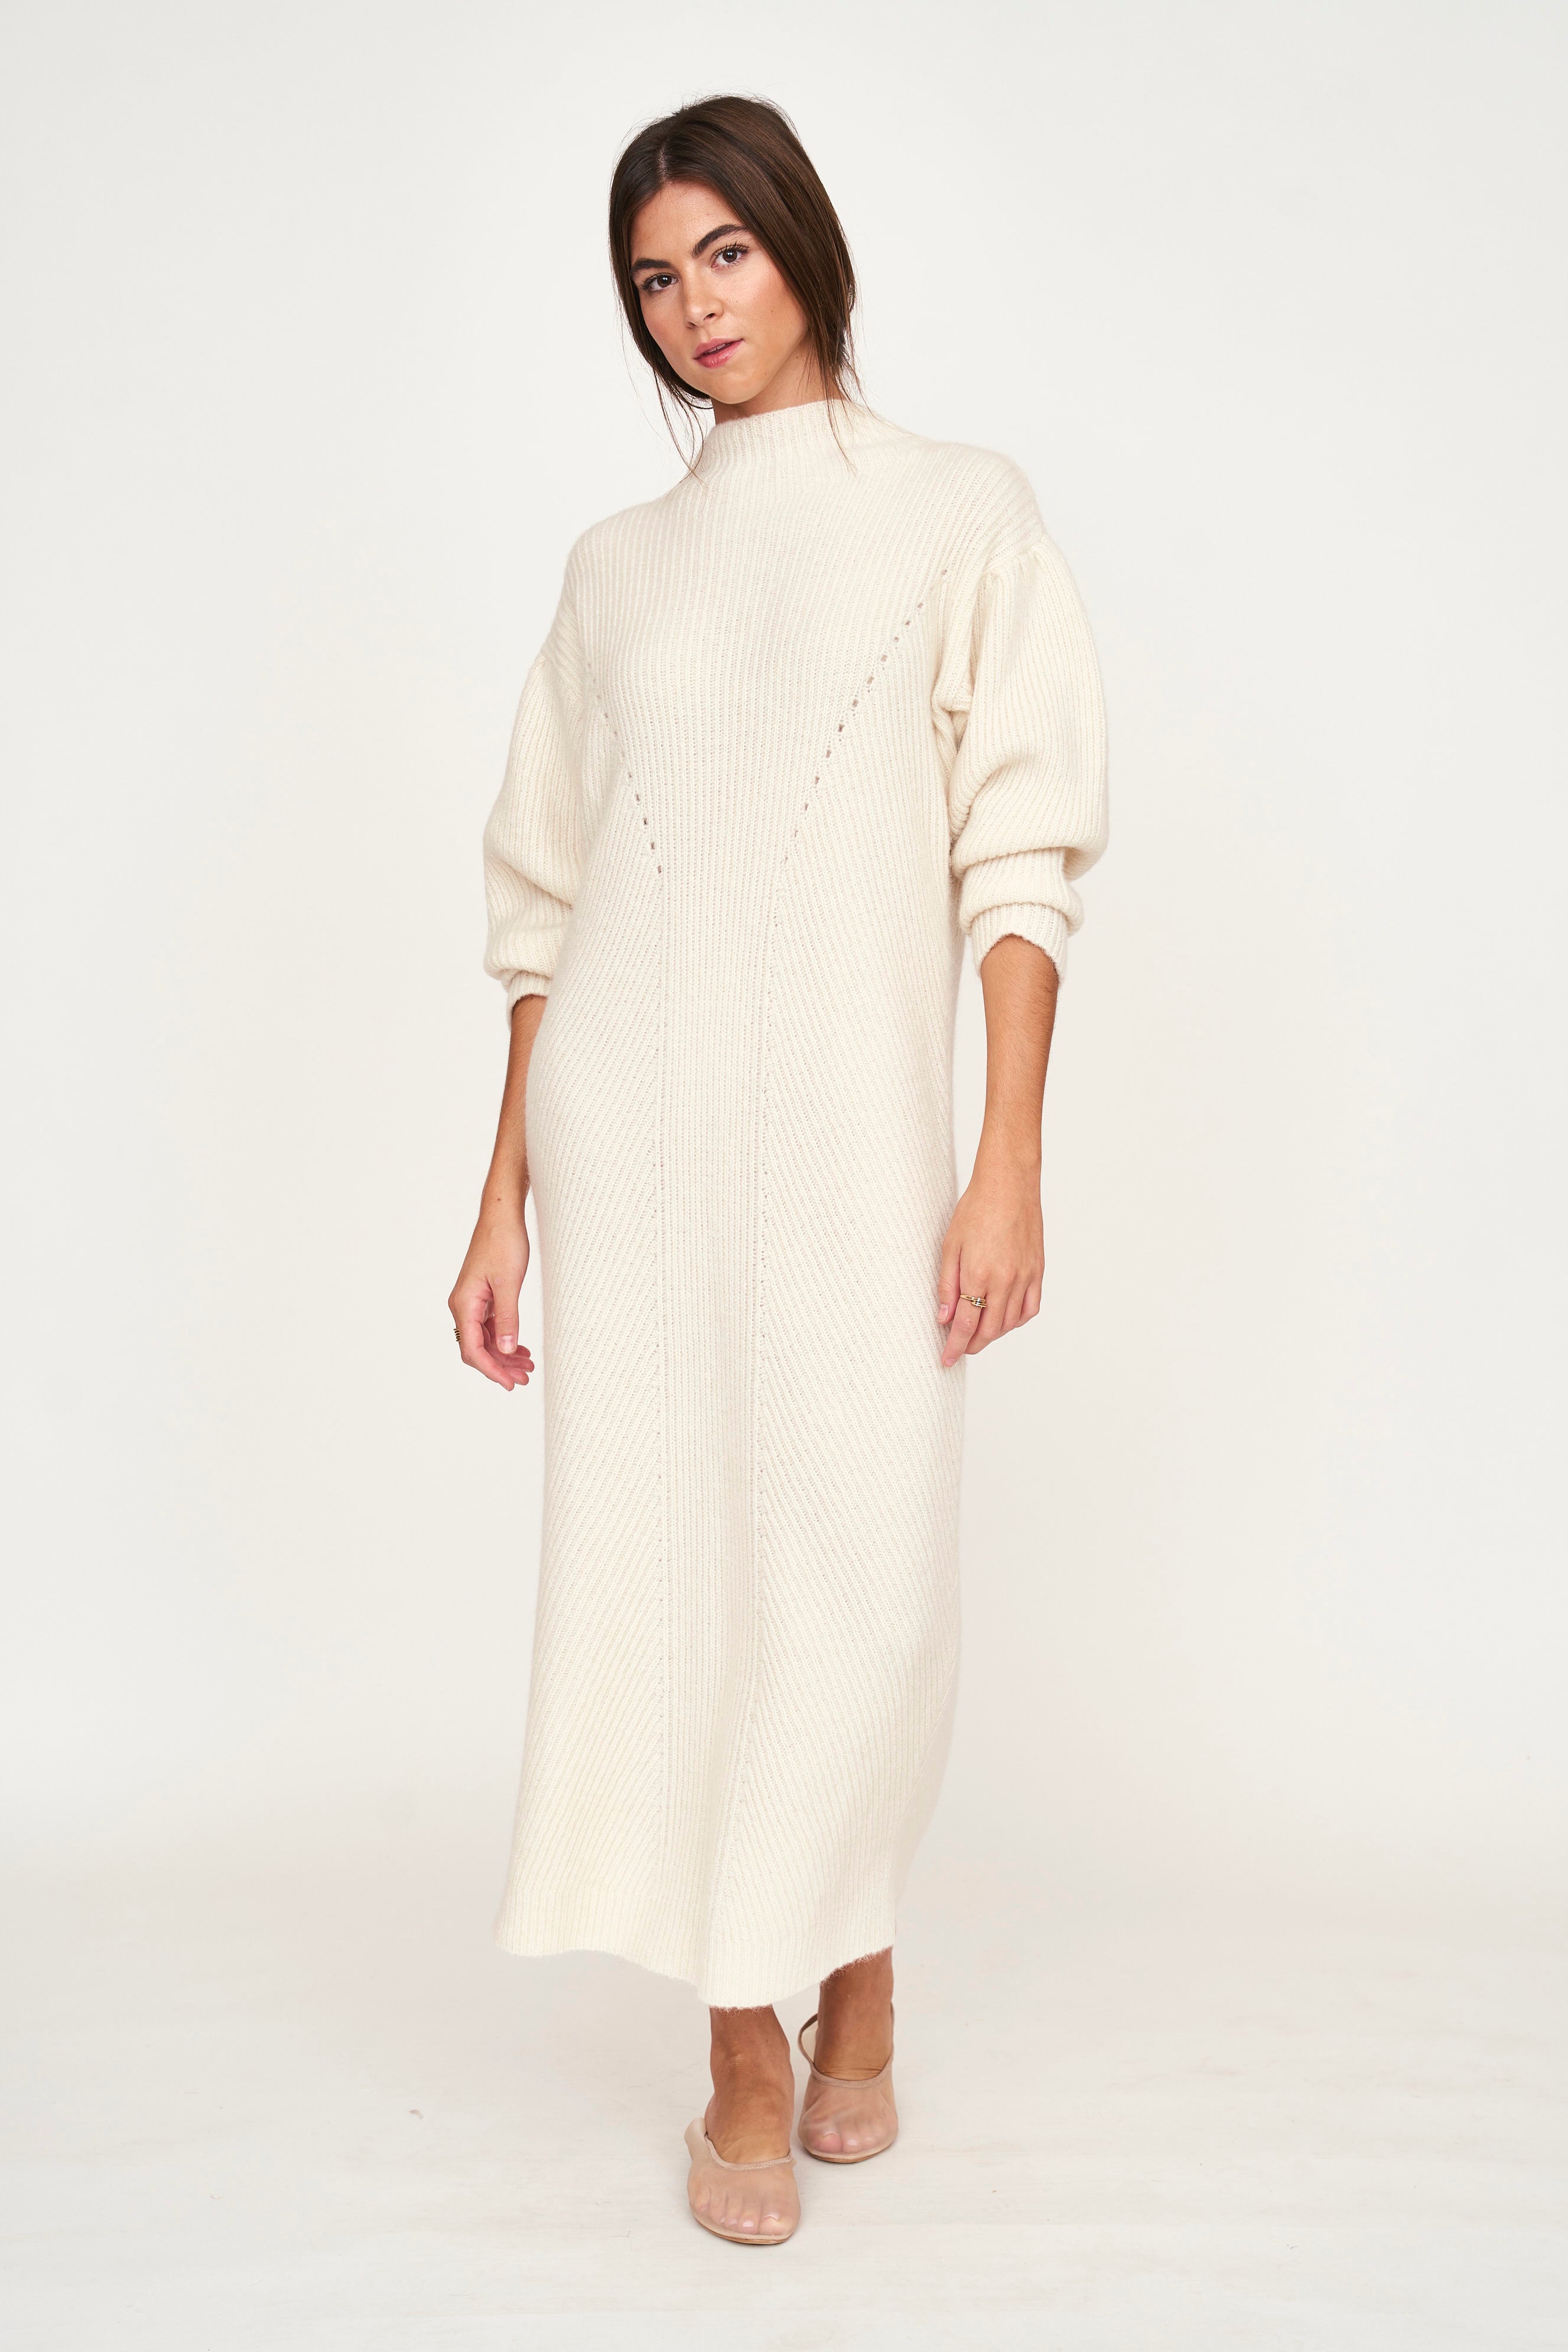 Mirth Pichu Pichu Sweater Dress in Ivory (Pre Order) M